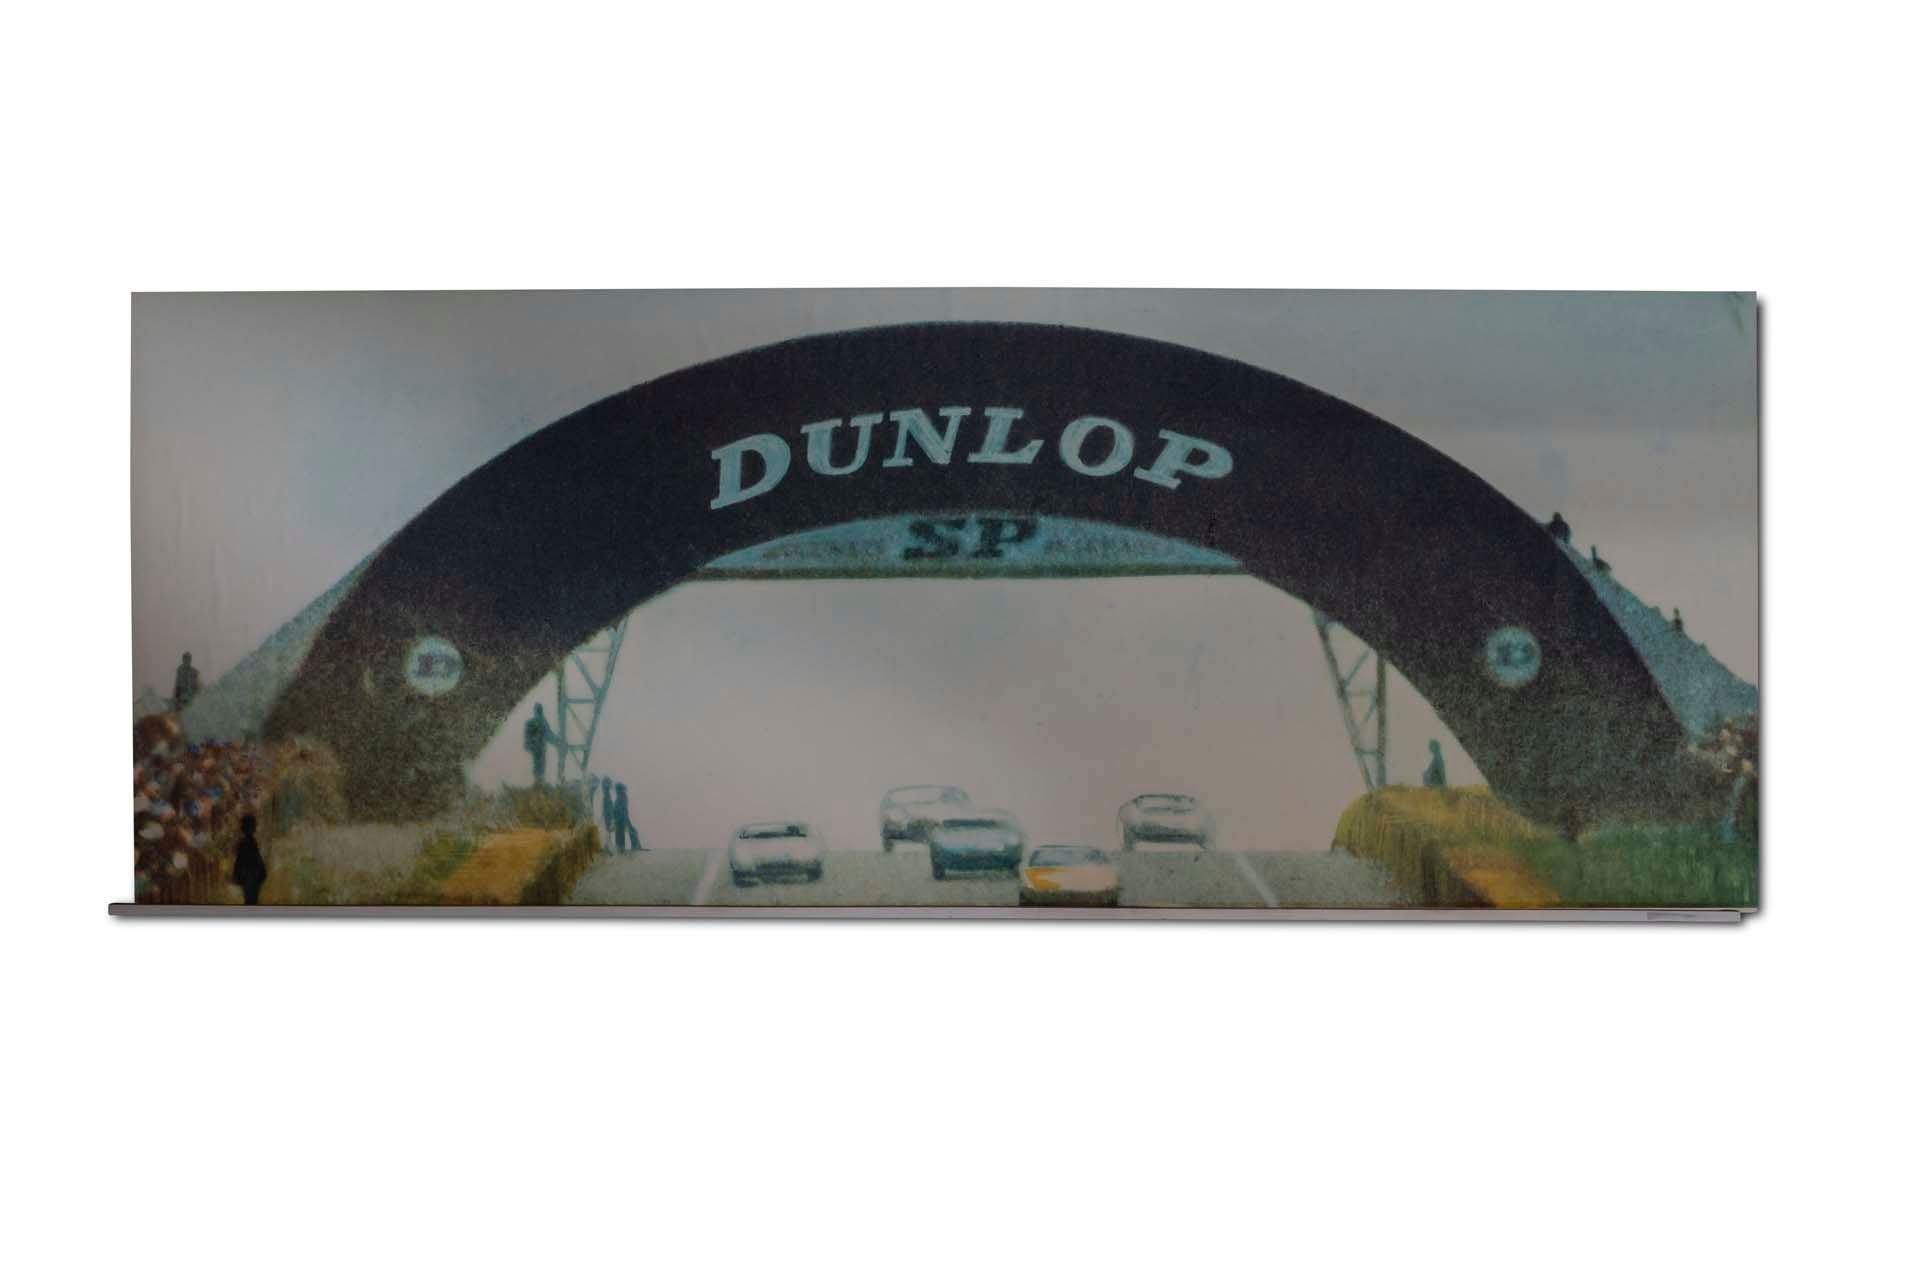 For Sale Large Posterboard 'Dunlop Bridge 24 heures du Mans'